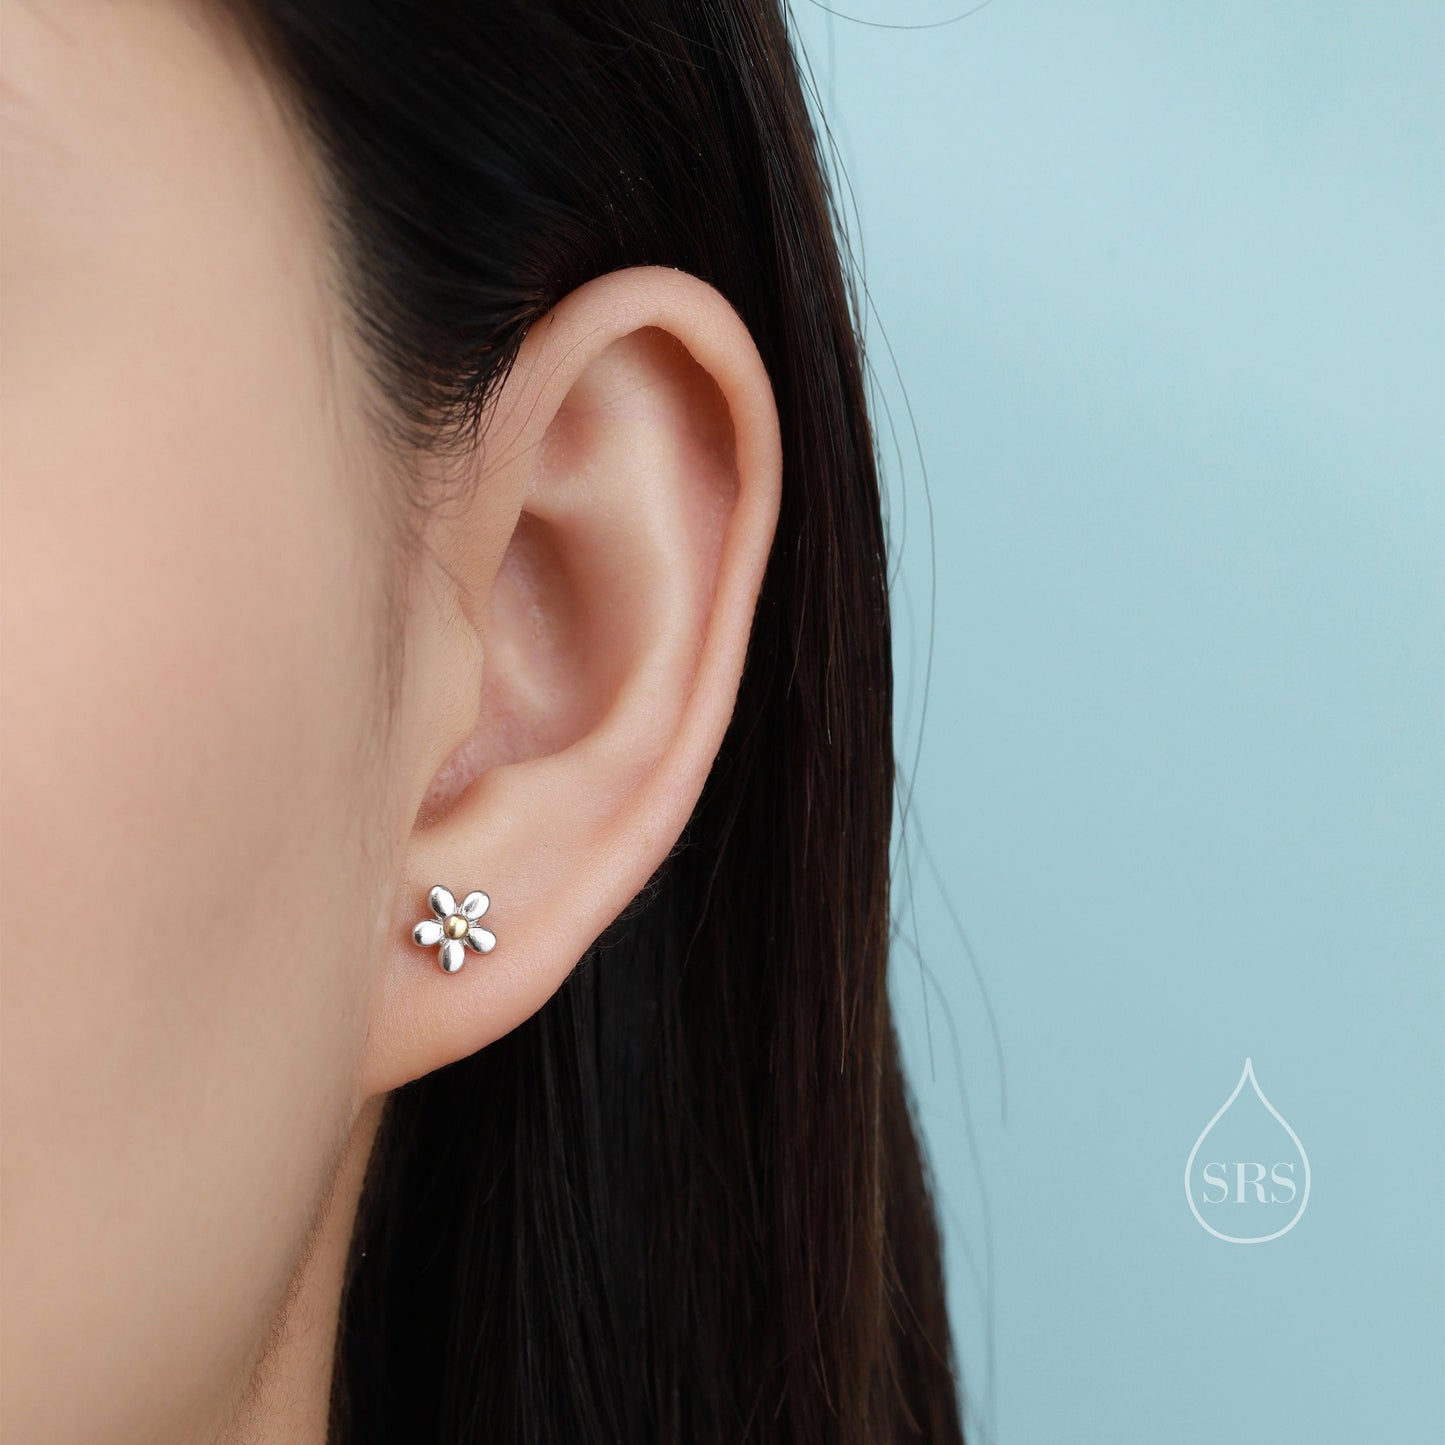 Tiny Little Forget-me-not Flower Stud Earrings in Sterling Silver, Cute Flower Stud, Tiny Flower Earrings, Floral Earrings